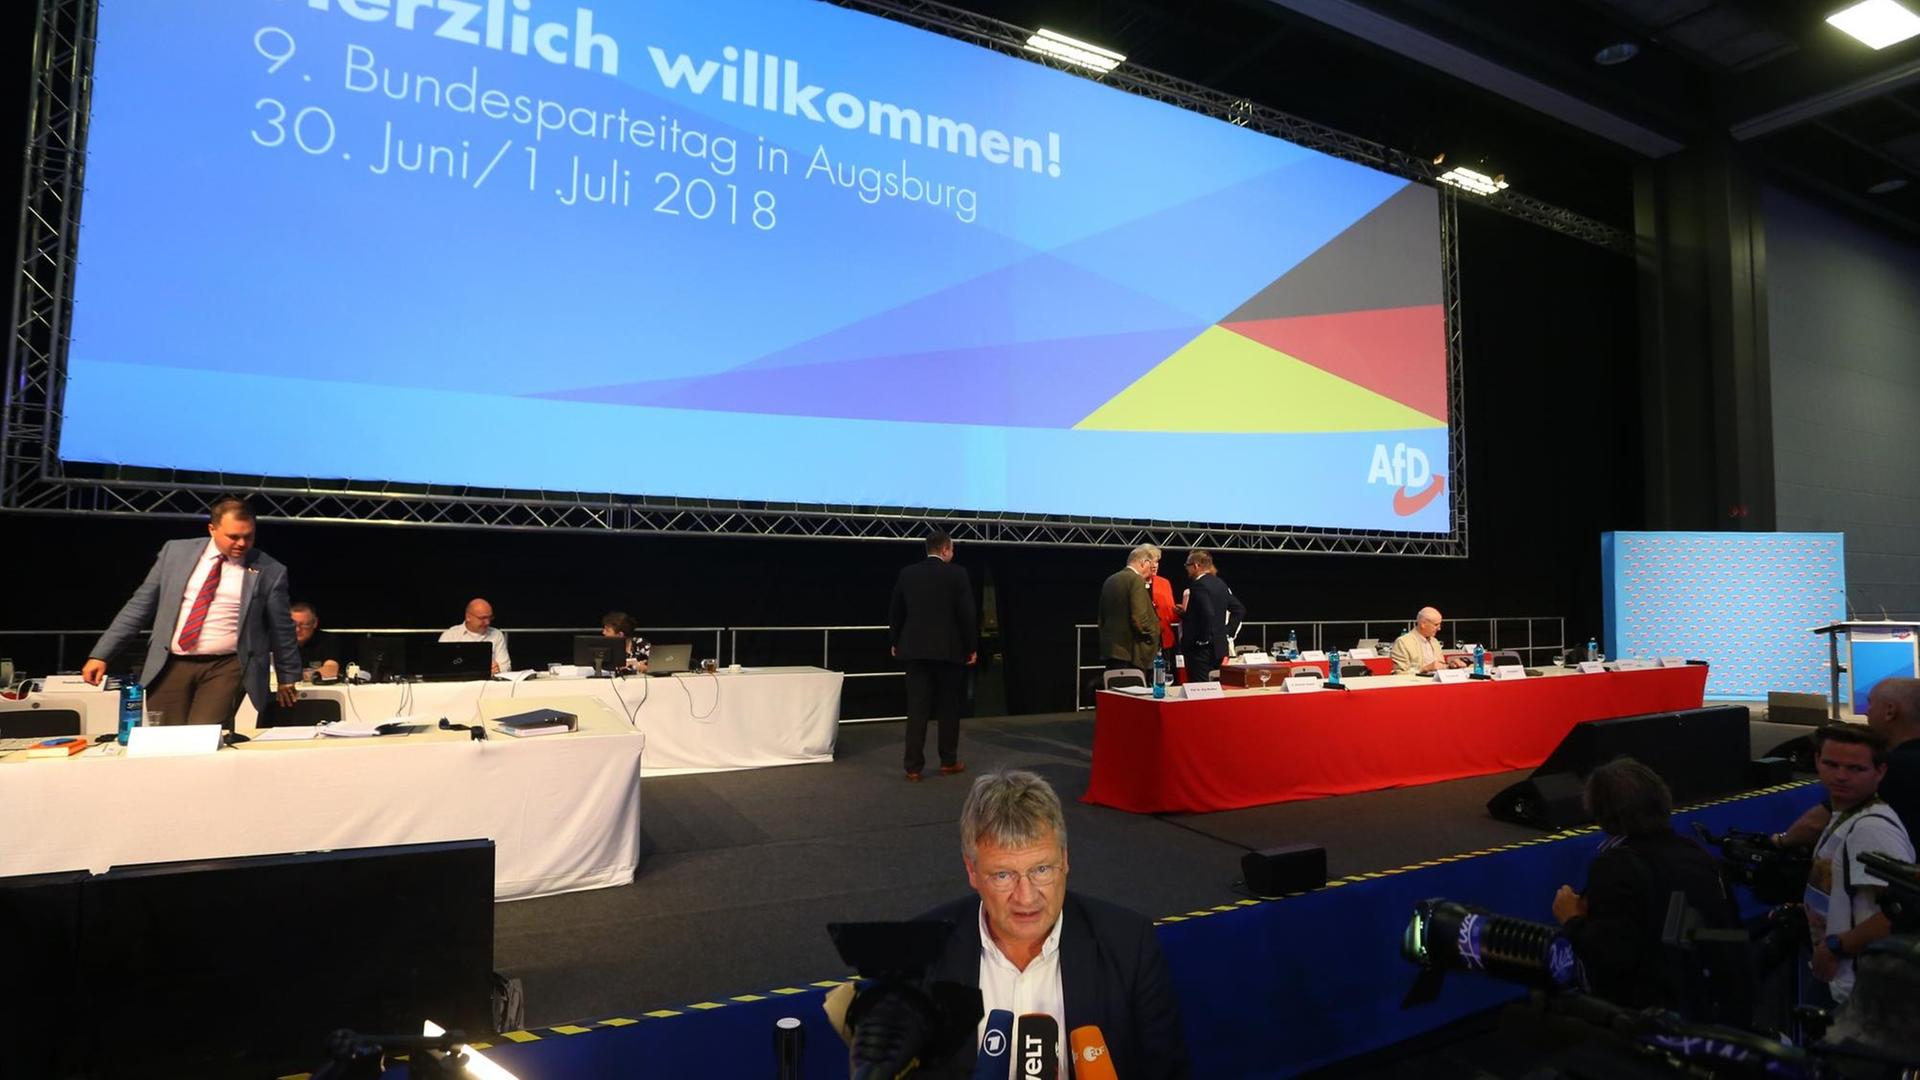 Jörg Meuthen, der Co-Parteivorsitzende der AfD, spricht beim Bundesparteitag vor Mikrofonen mit Journalisten. Im Hintergrund steht auf einer Leinwand "Herzlich Willkommen".